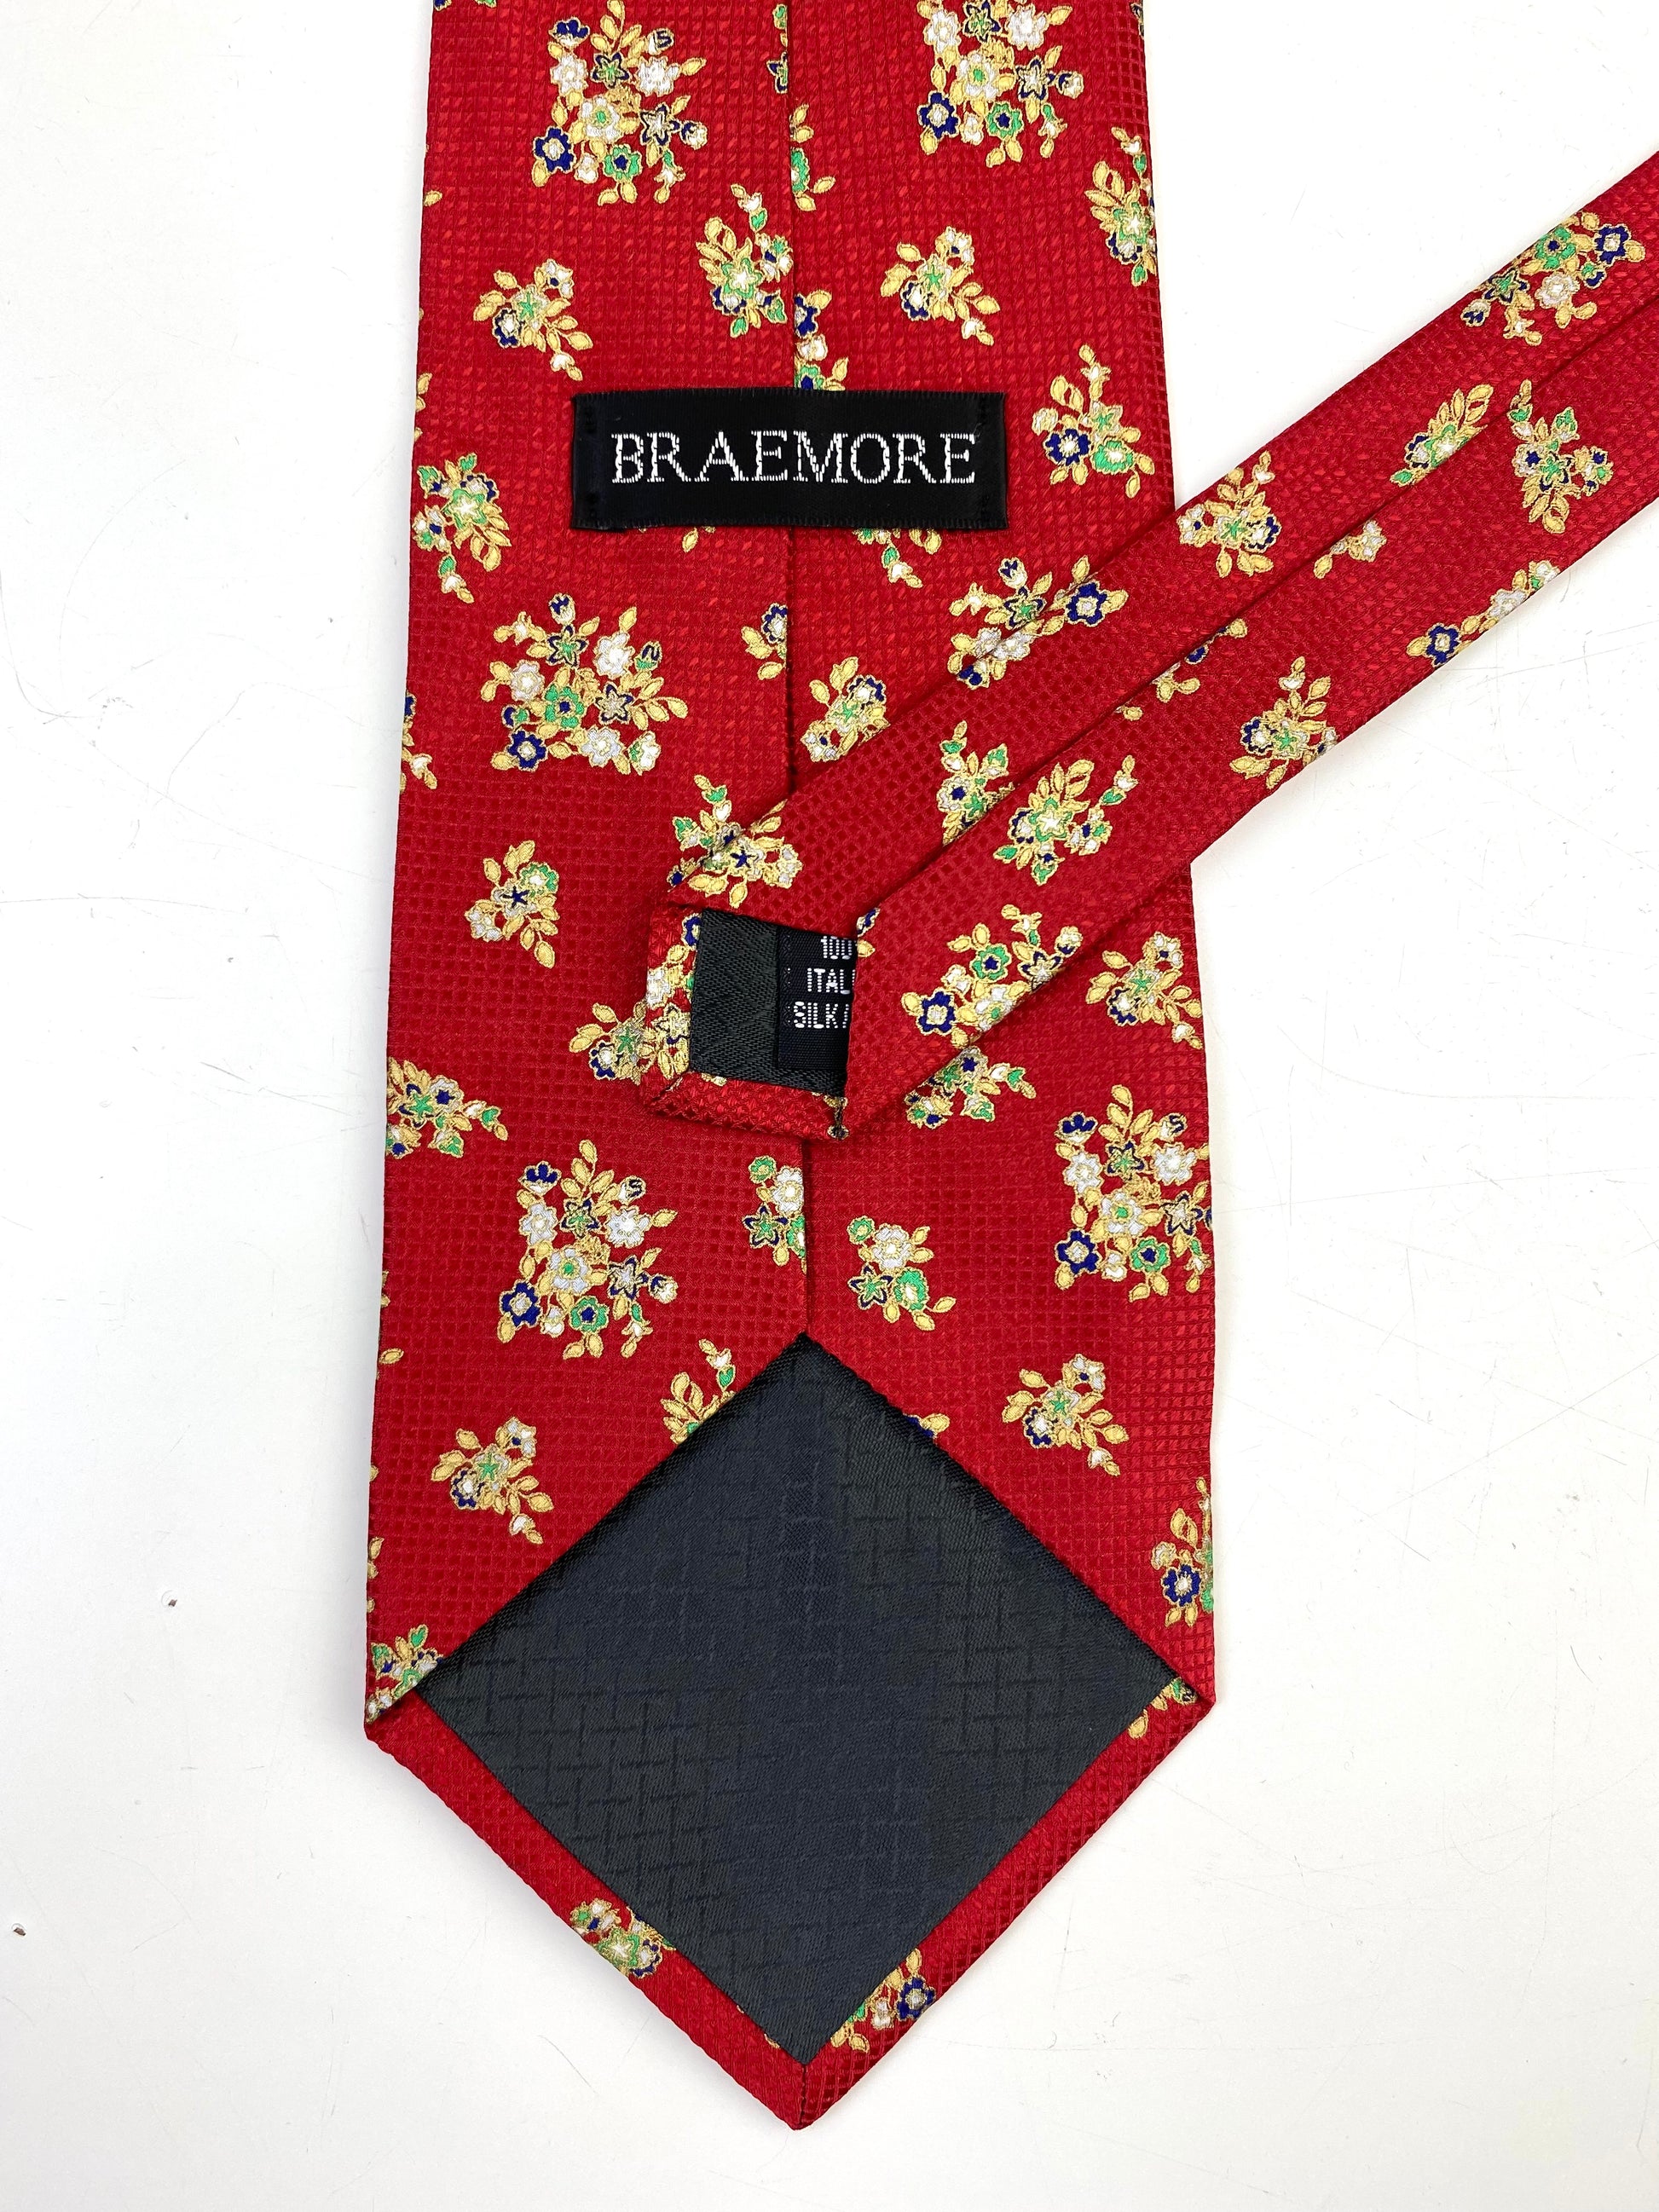 90s Deadstock Silk Necktie, Men's Vintage Red/ Gold Floral Pattern Tie, NOS